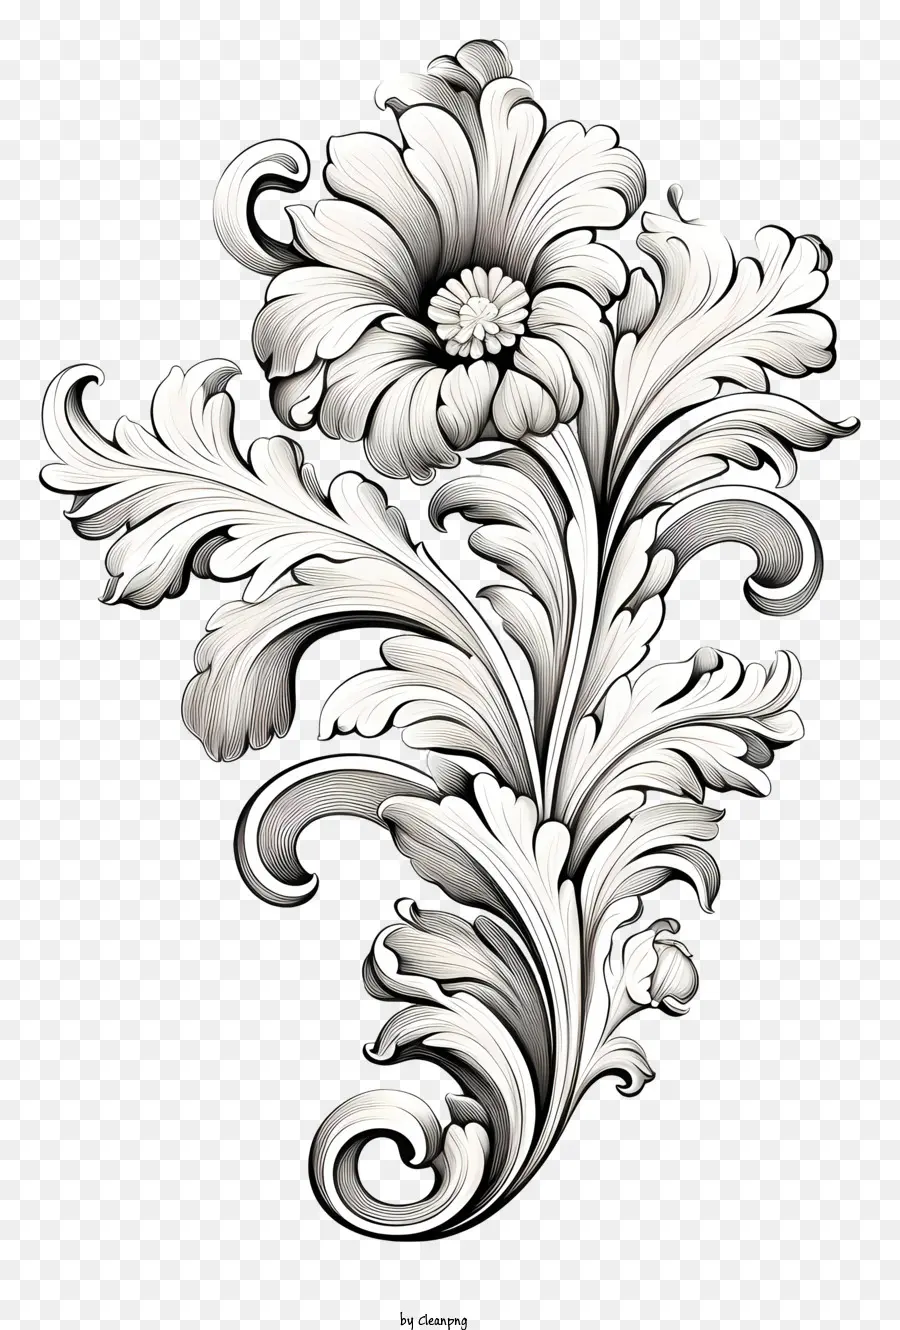 disegno floreale - Design floreale in bianco e nero con dettagli intricati